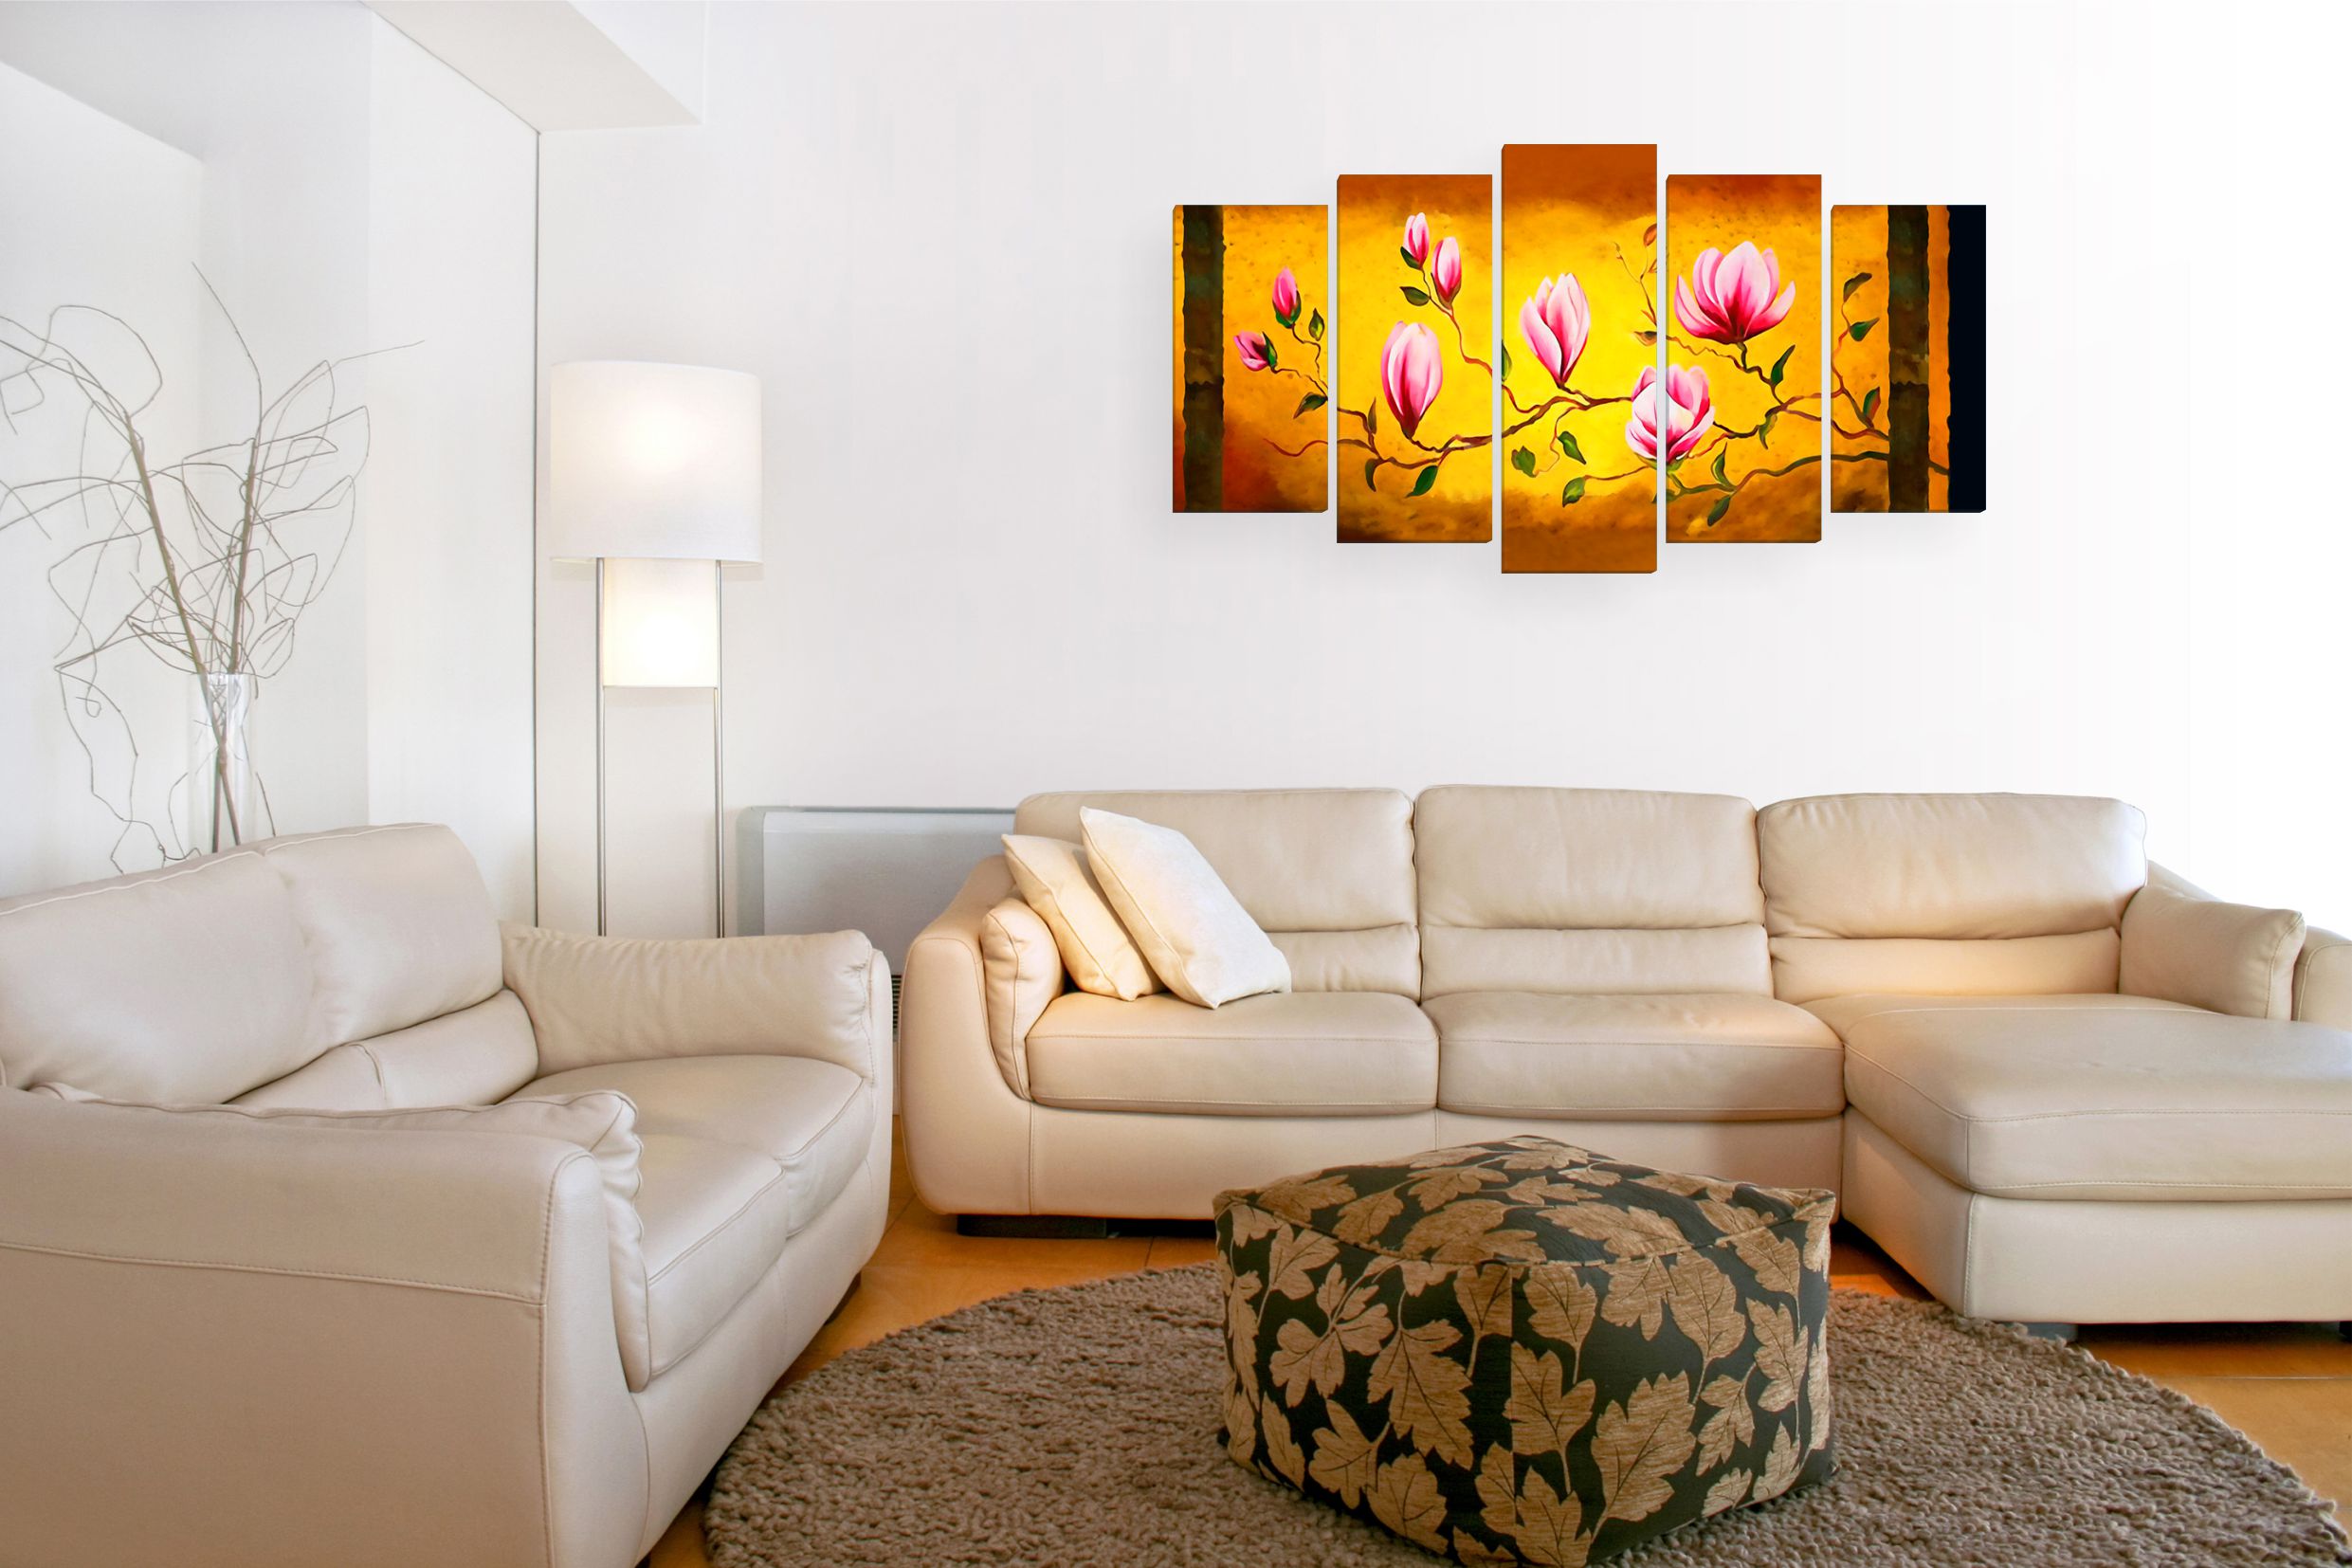 Картины в интерьере гостиной — как украсить интерьер, выполненный в разных стилях